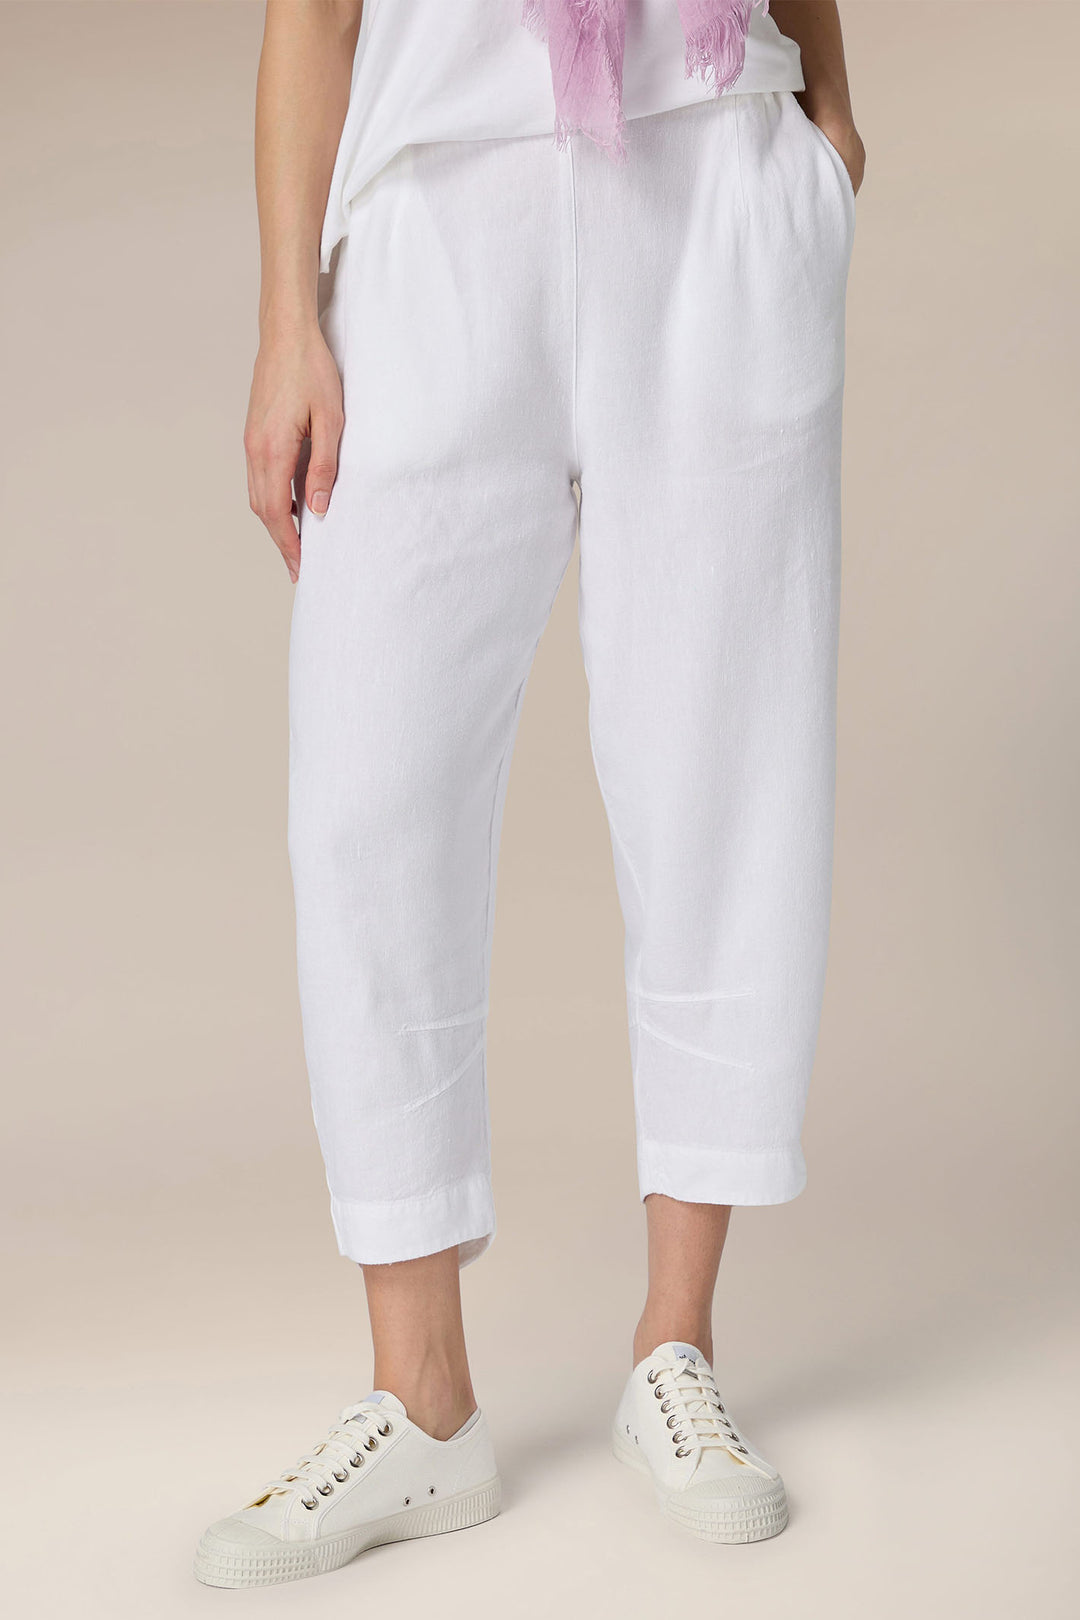 Sahara LAP5691-HTL White Twisted Linen Crop Bubble Trousers White - Dotique